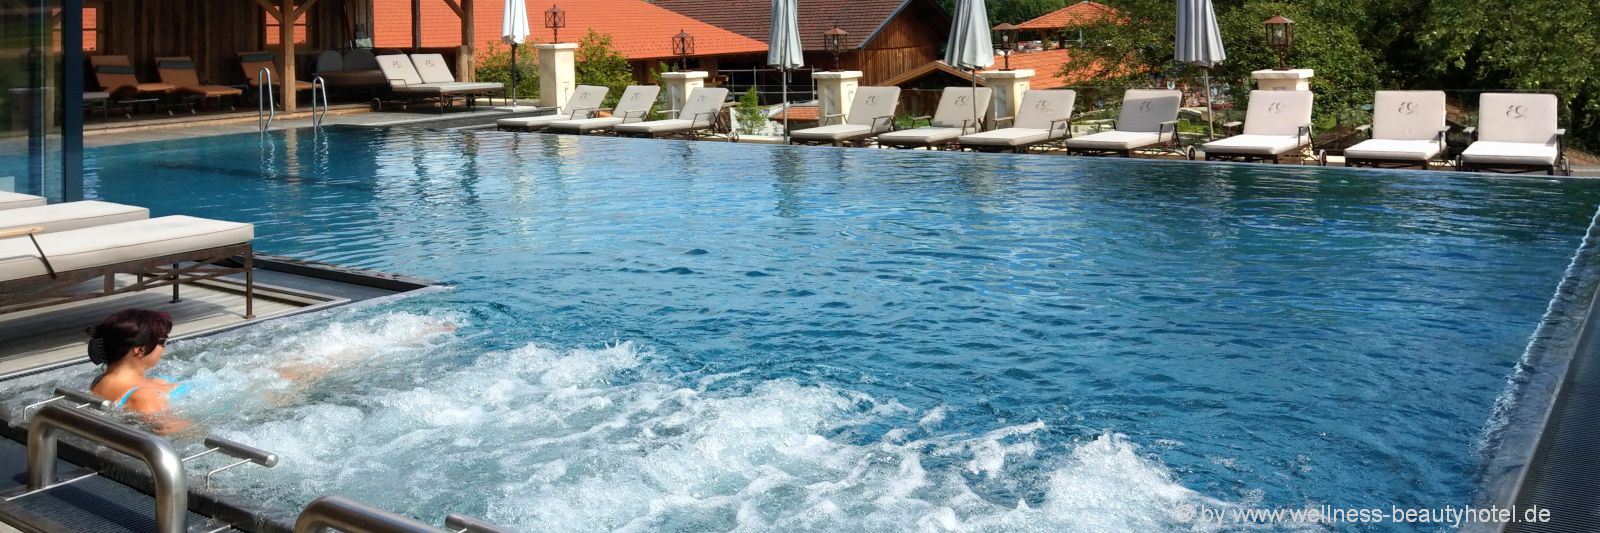 wellnesshotel-bayerischer-wald-infinity-pool-schwimmbad-wellnessurlaub